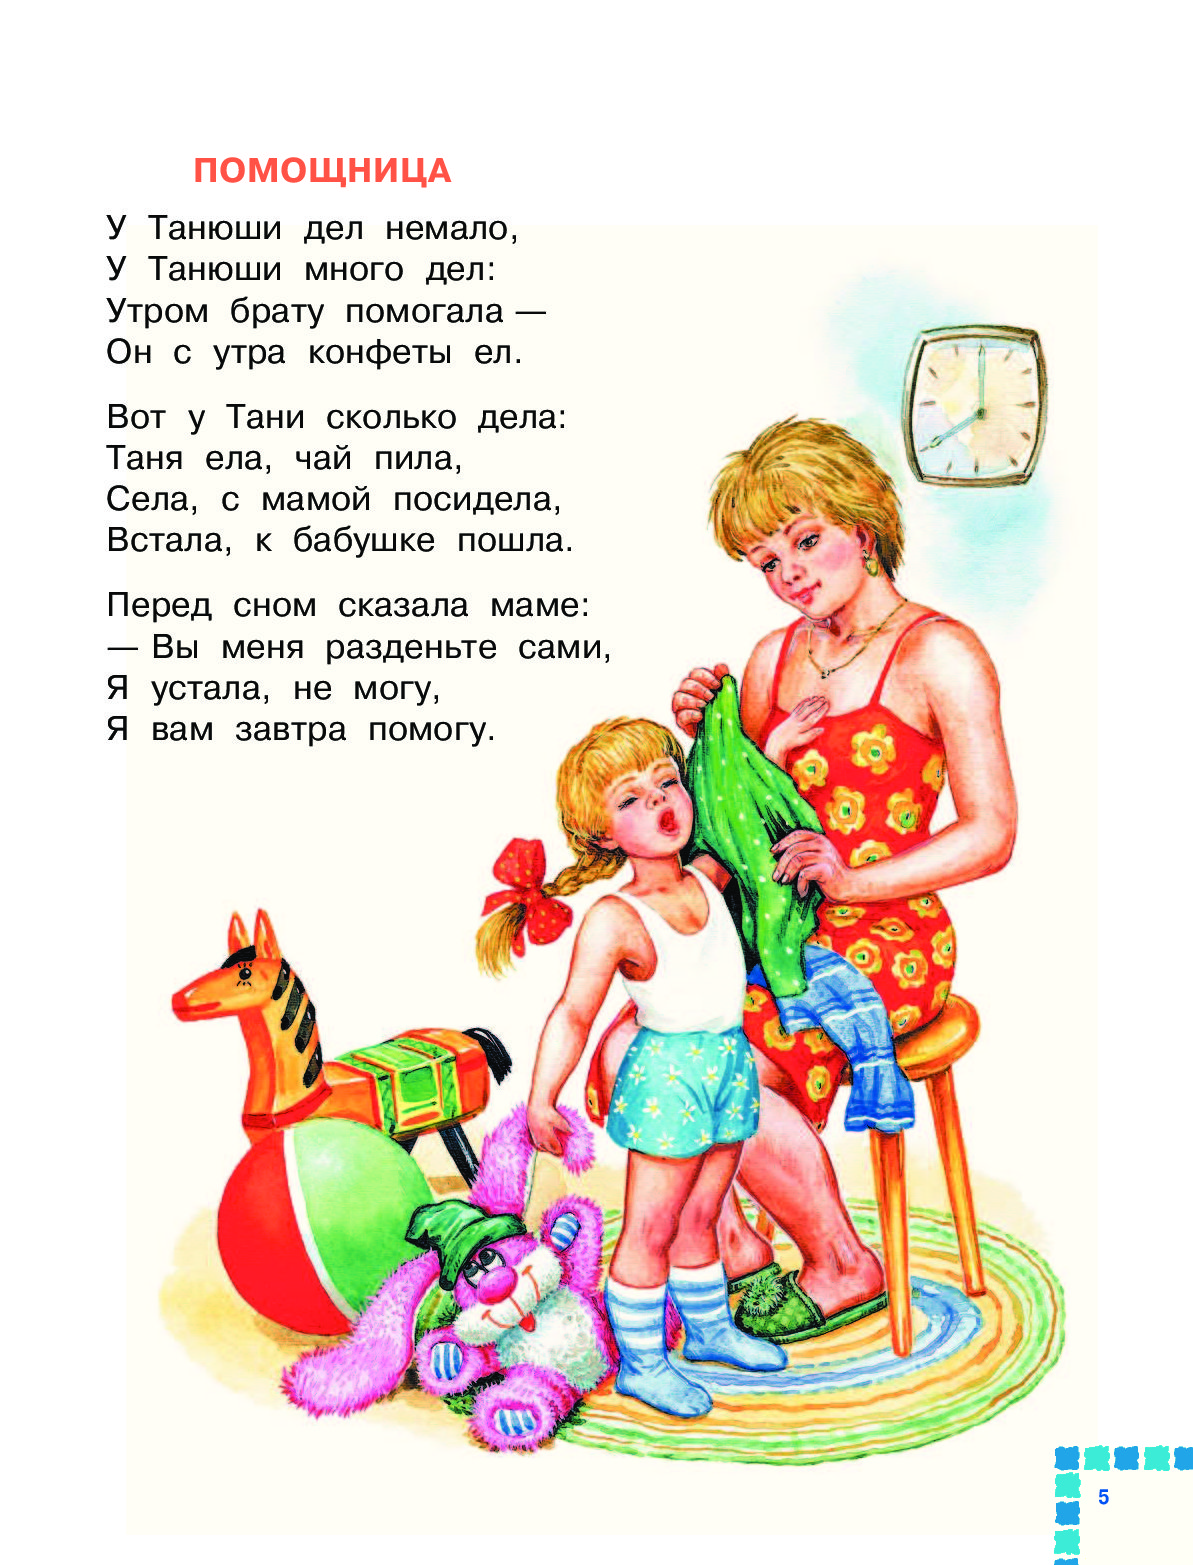 Известное стихотворение для детей. Стихи для детей Агнии Барто для детей 5-6 лет.